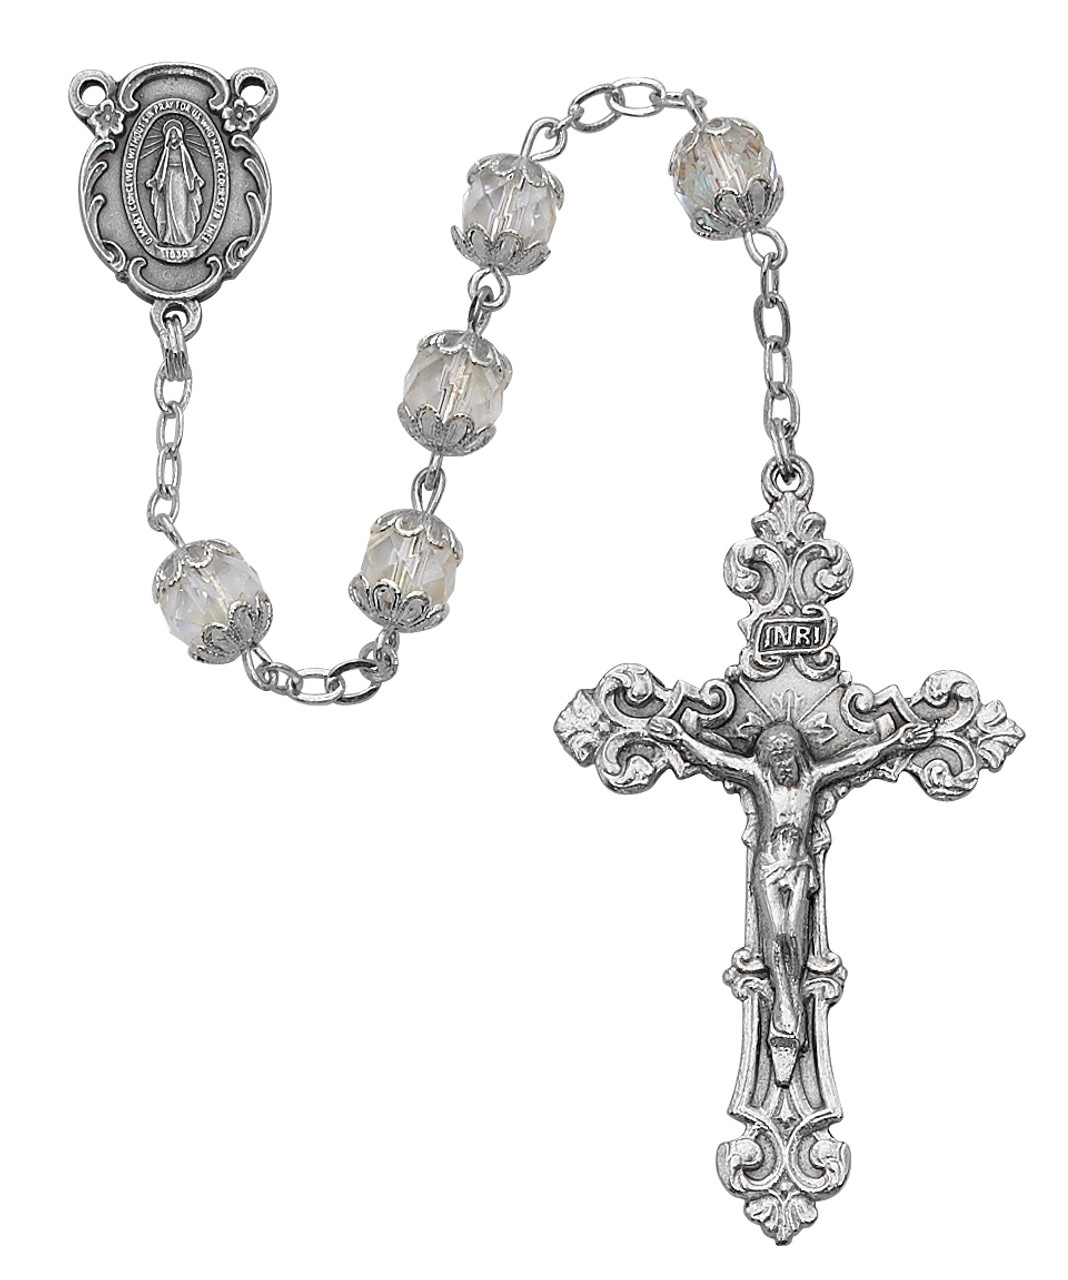 Decorative Rosary Beads Gray, Christian Holiday Decor